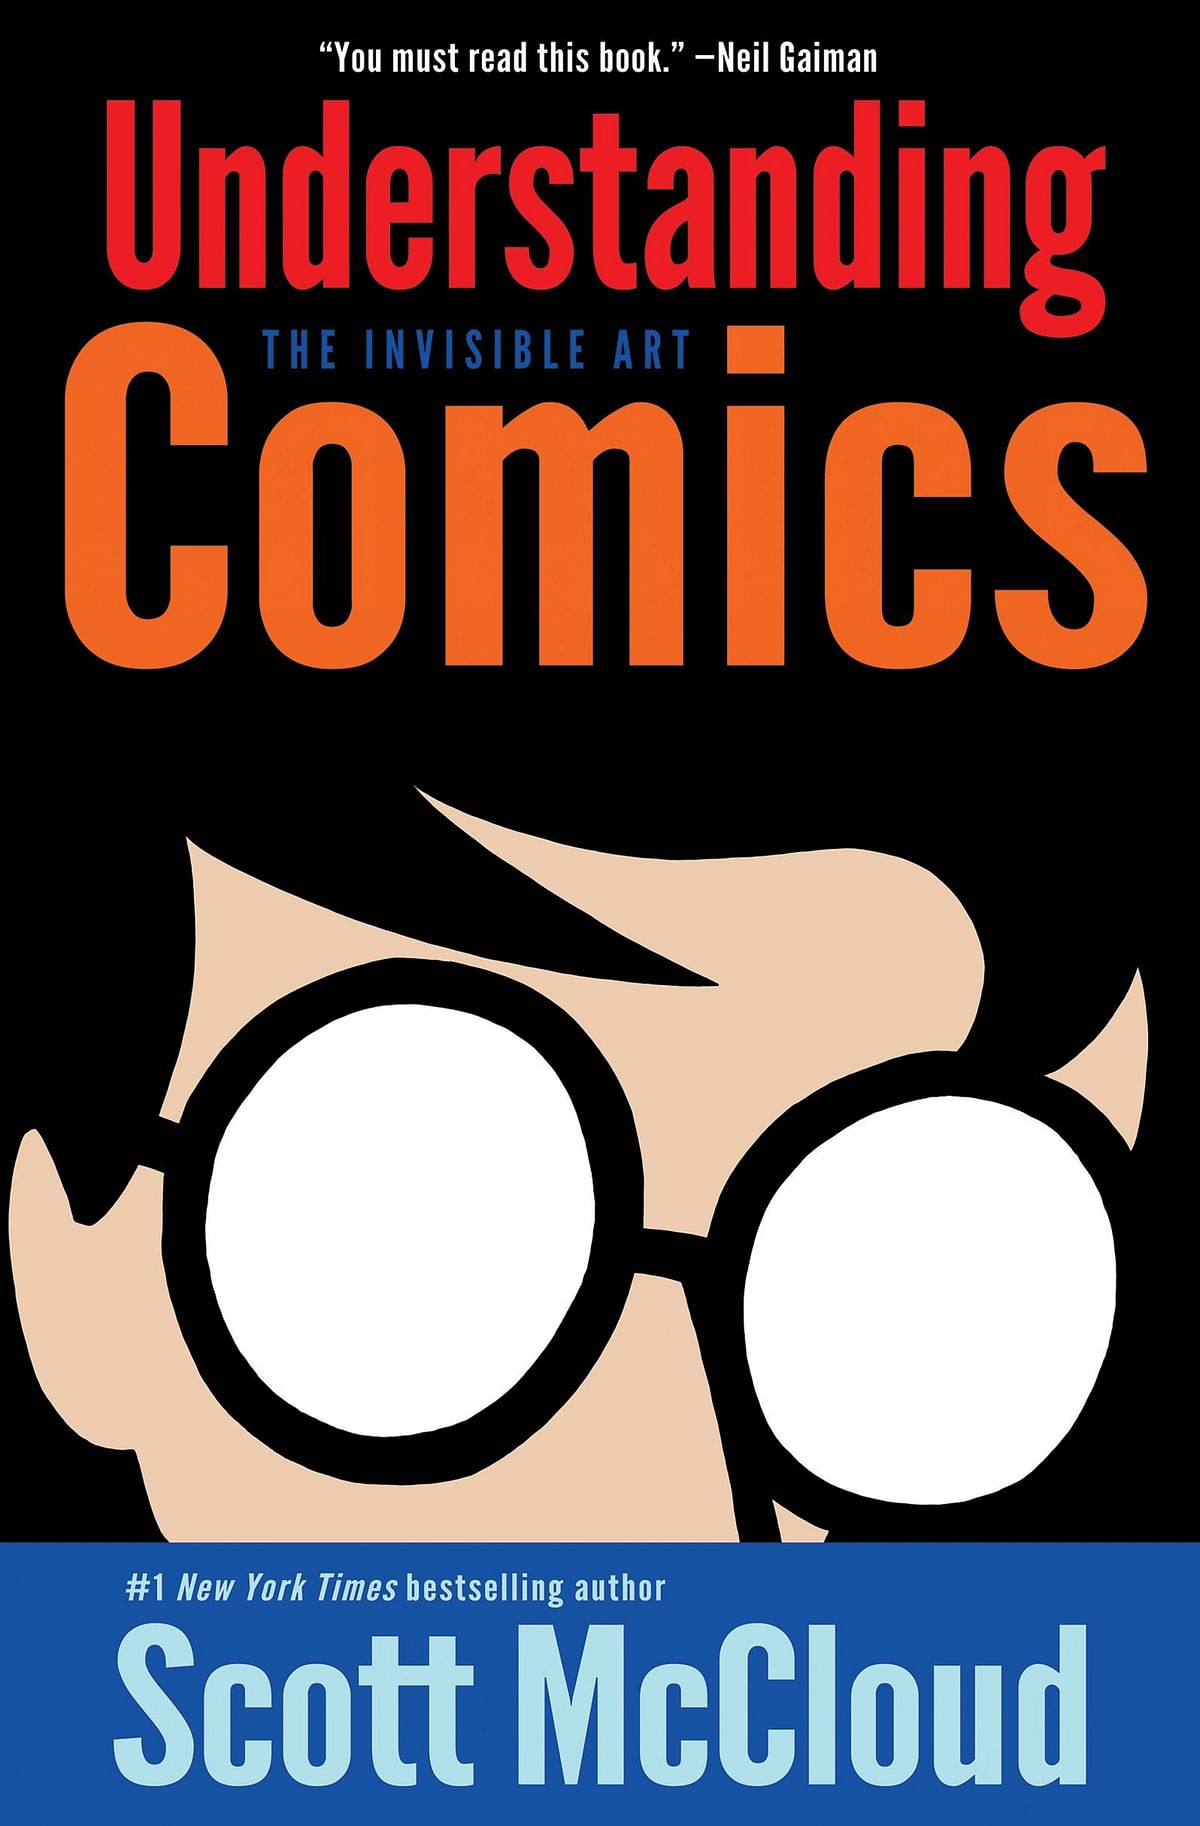 Understanding Comics. Credit: Special Arrangement